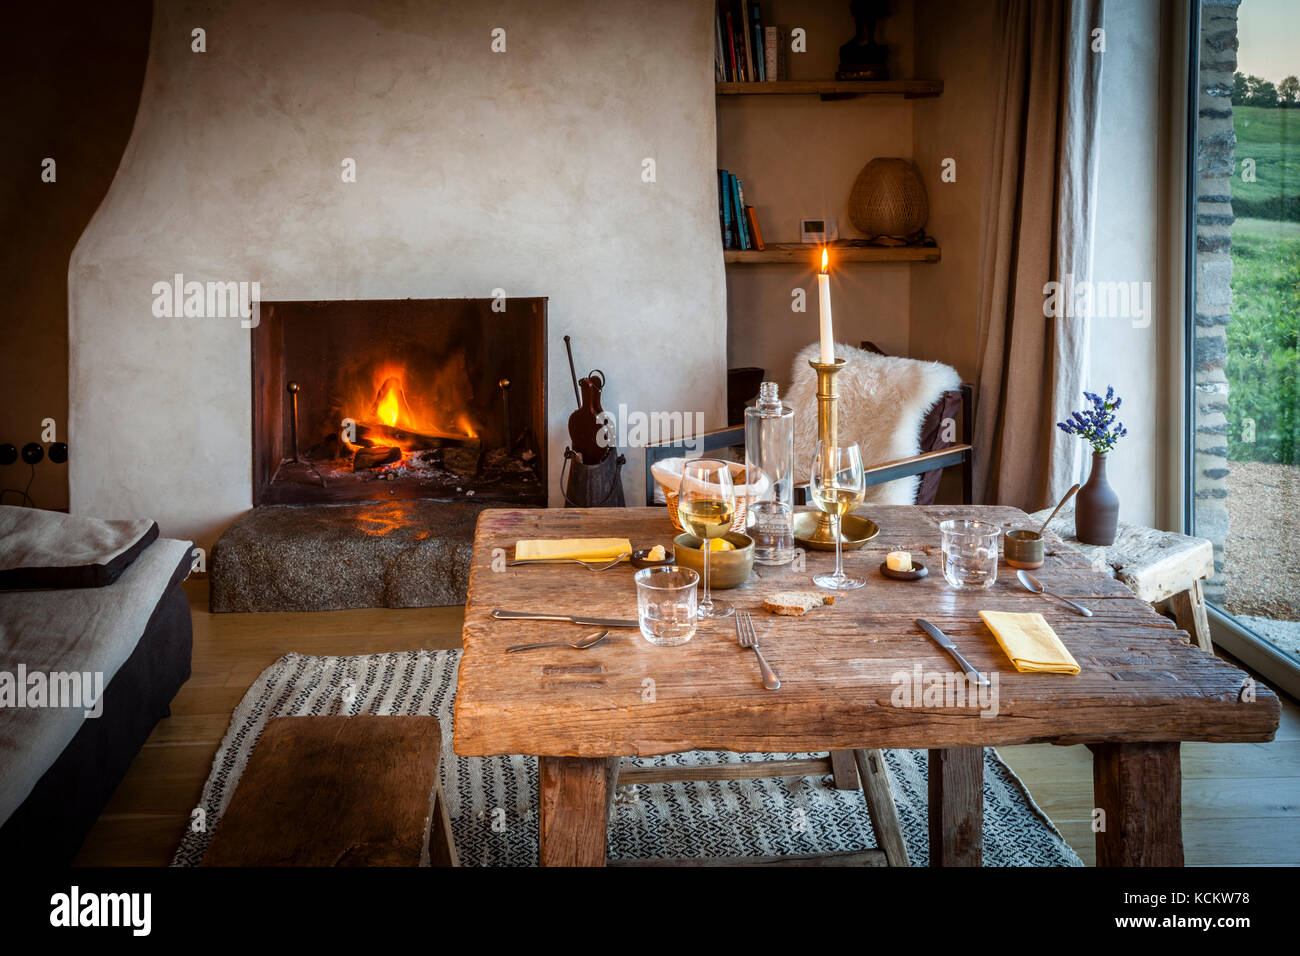 Abendessen an den eigenen vier Wänden. Der Kamin brennt und das Hauptgericht kann im Ausland in den Ofen gestellt werden. Ferme du Vent in der Nähe von Château Richeux, Saint-Malo, Frankreich Stockfoto